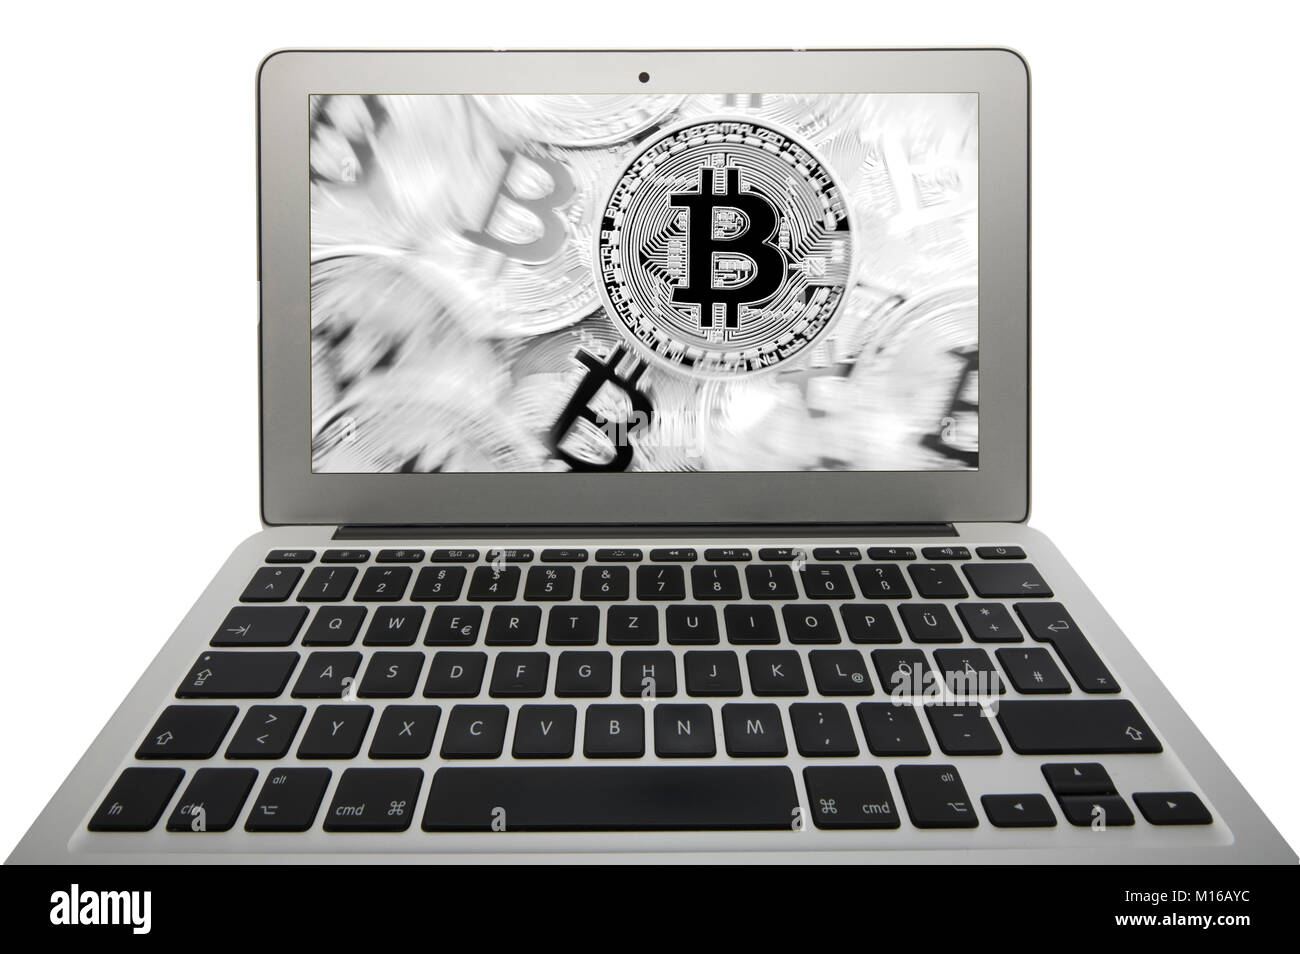 Image symbole de la turbulence, la volatilité, de l'action de la monnaie numérique, de l'or monnaie physique portable bitcoin Banque D'Images